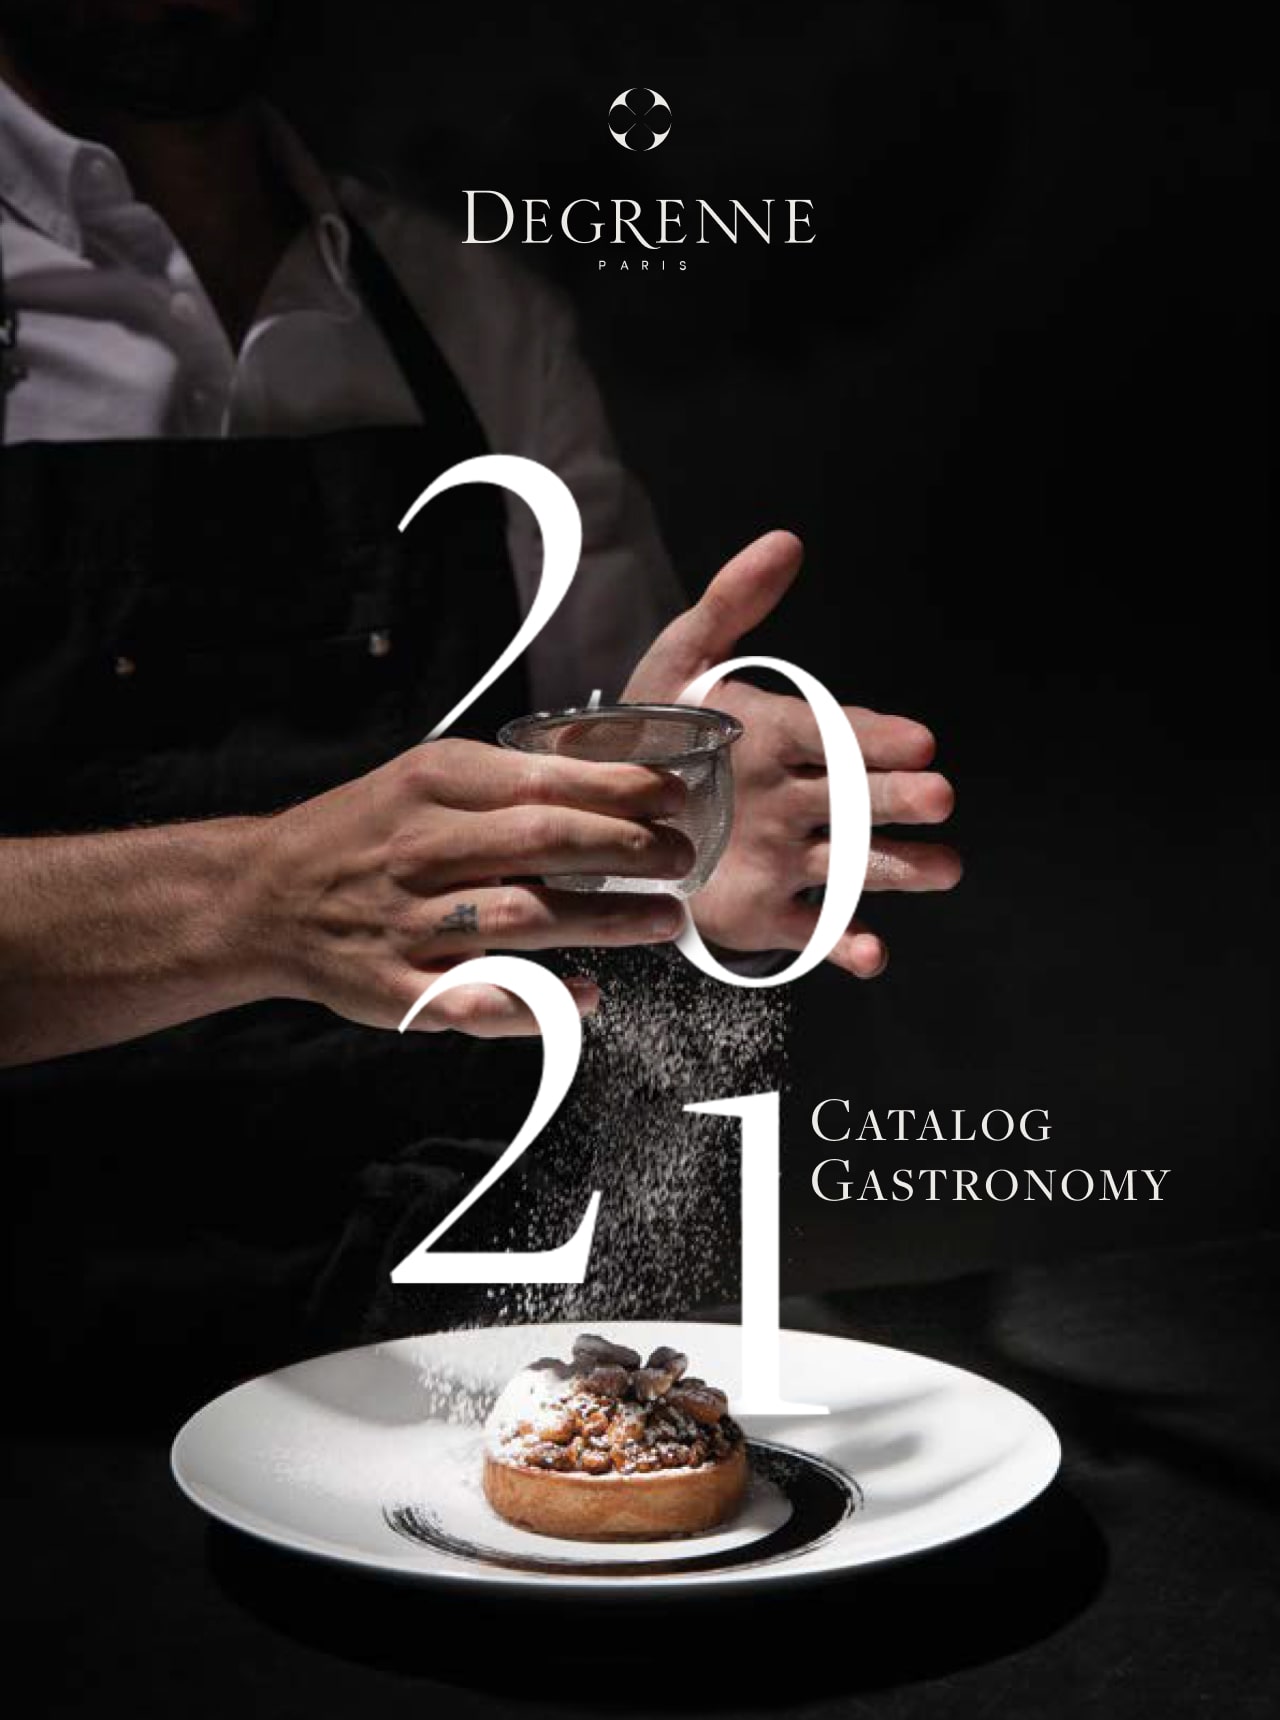 Degrenne Catalog Gastronomy